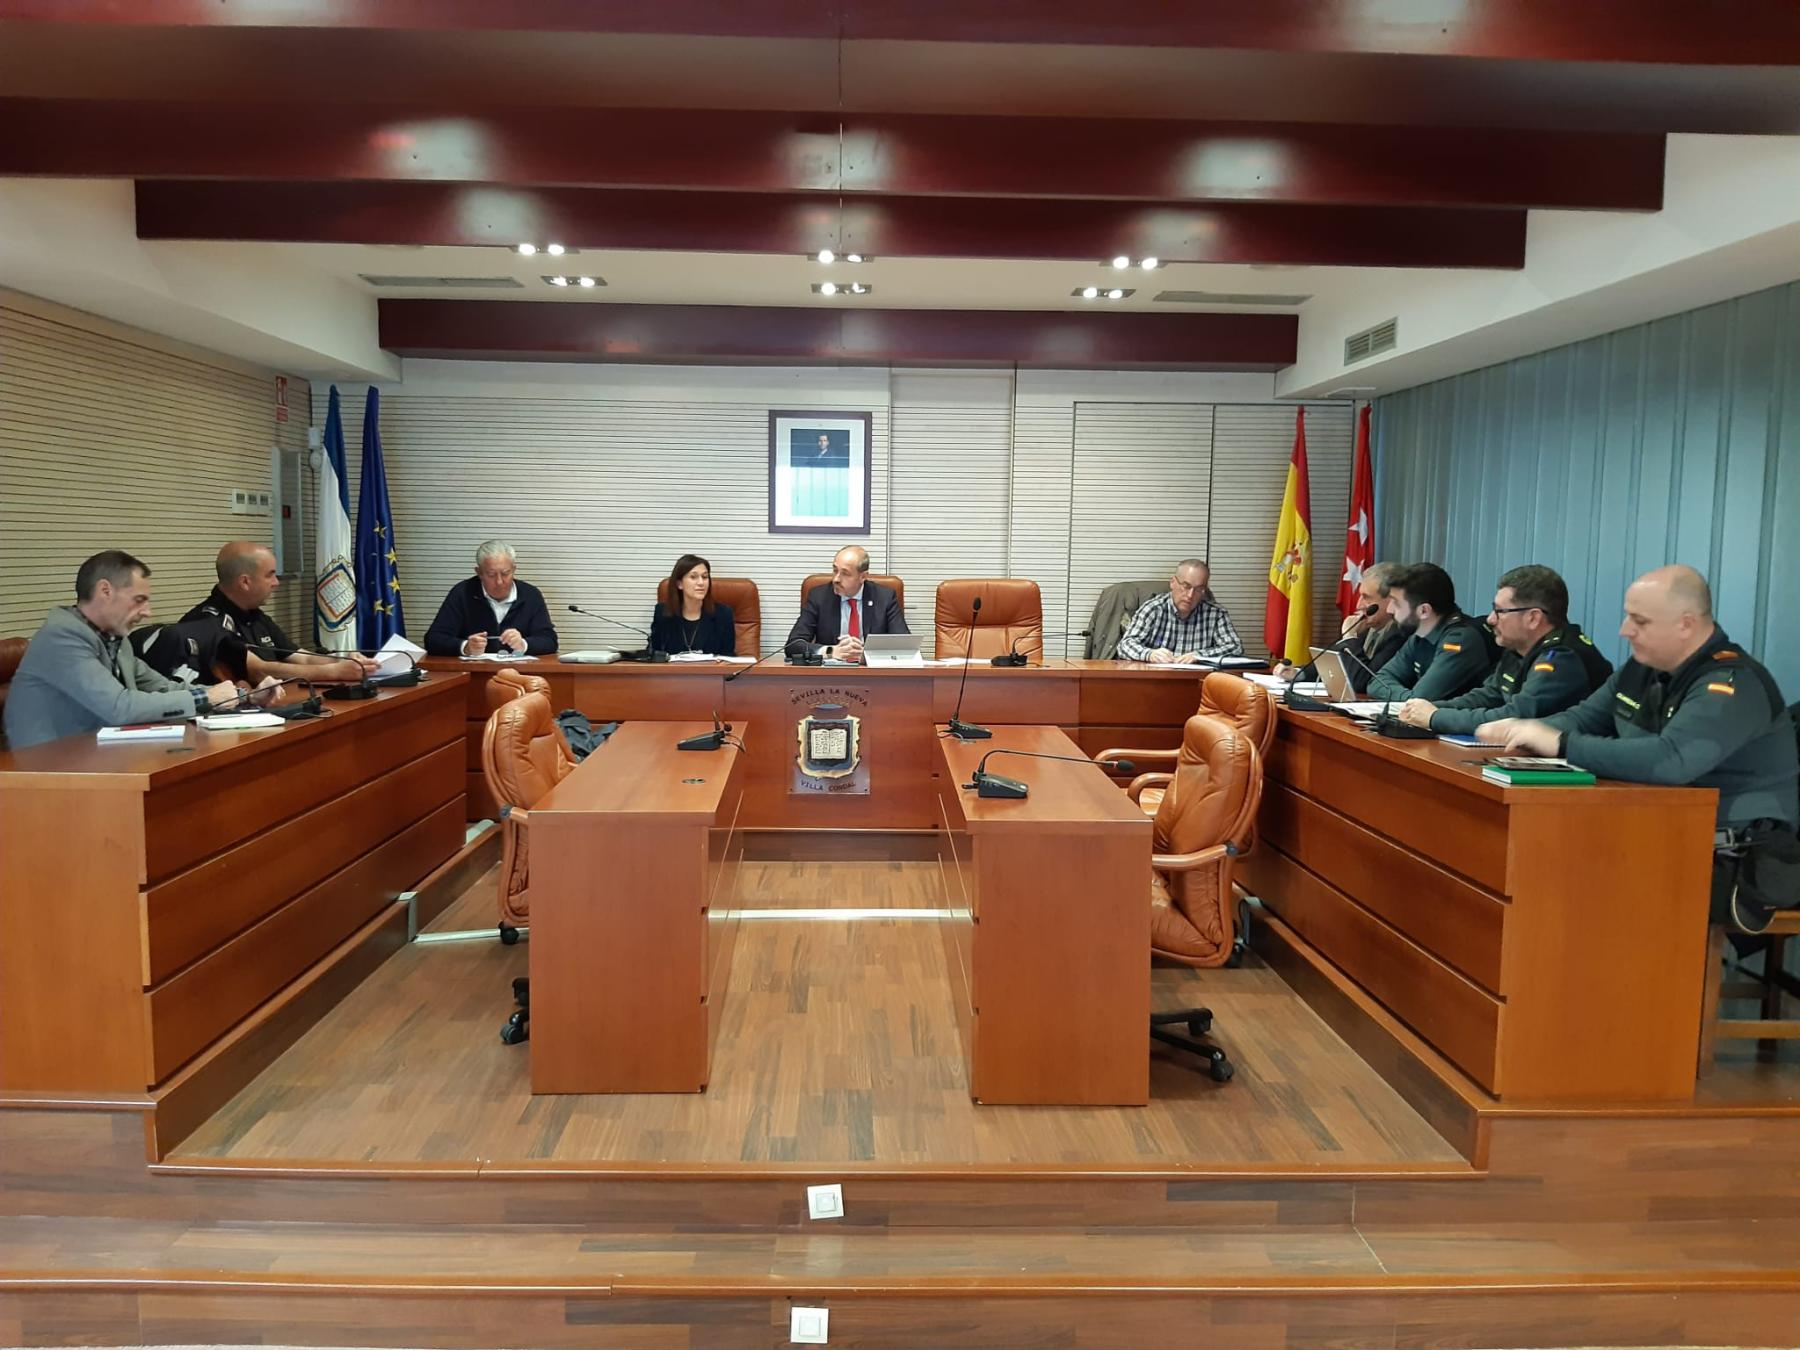 La subdelegada del Gobierno, Pilar Trinidad, preside junto al alcalde de Sevilla la Nueva, Asensio Martínez, la Junta Local de Seguridad del municipio